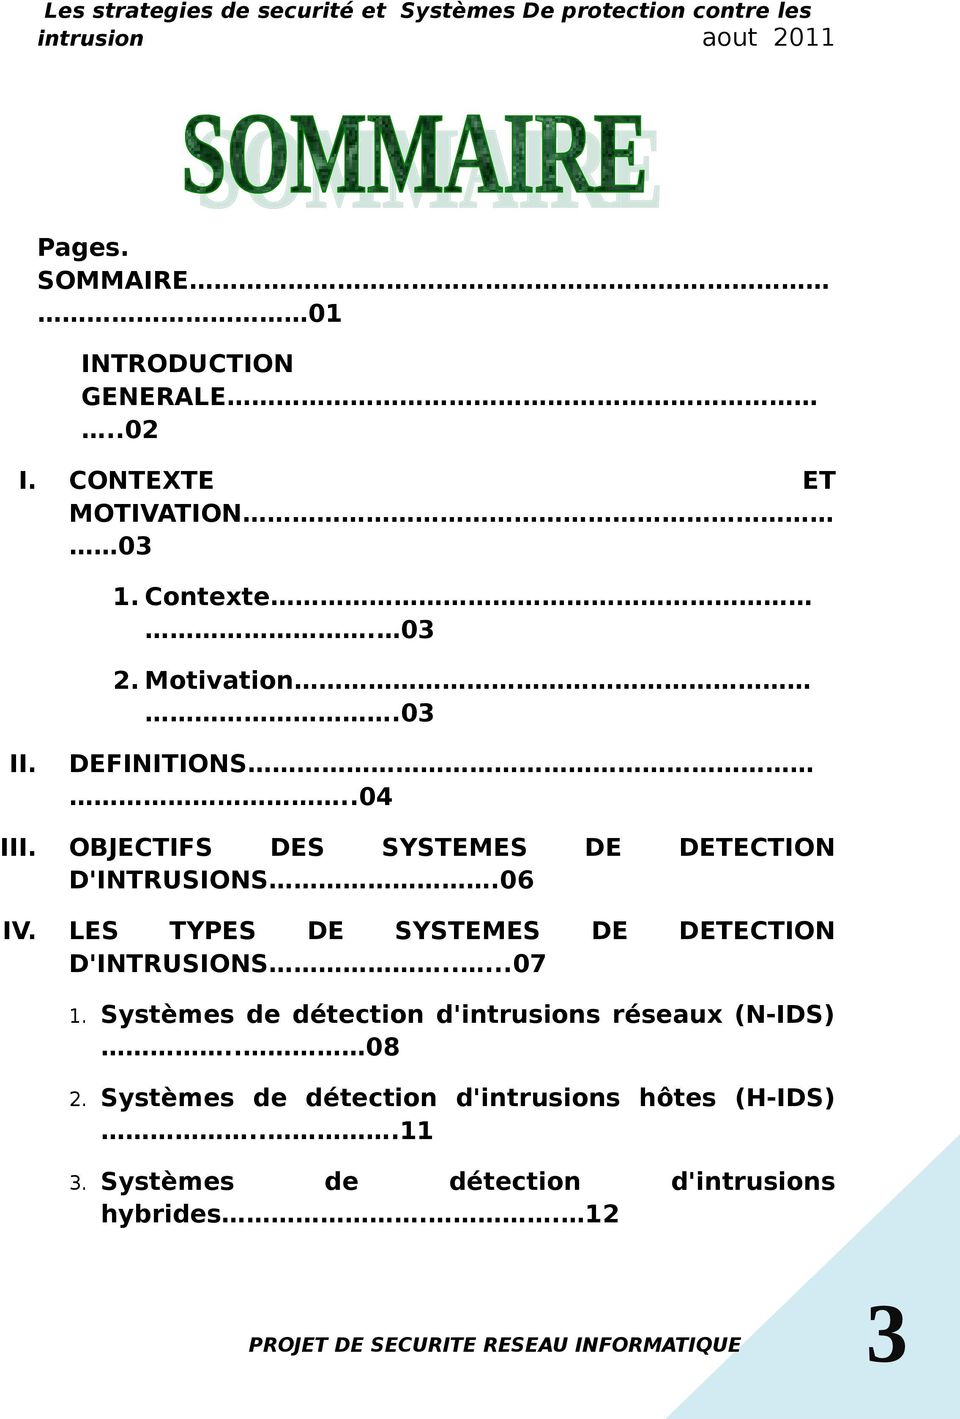 LES TYPES DE SYSTEMES DE DETECTION D'INTRUSIONS.....07 1.